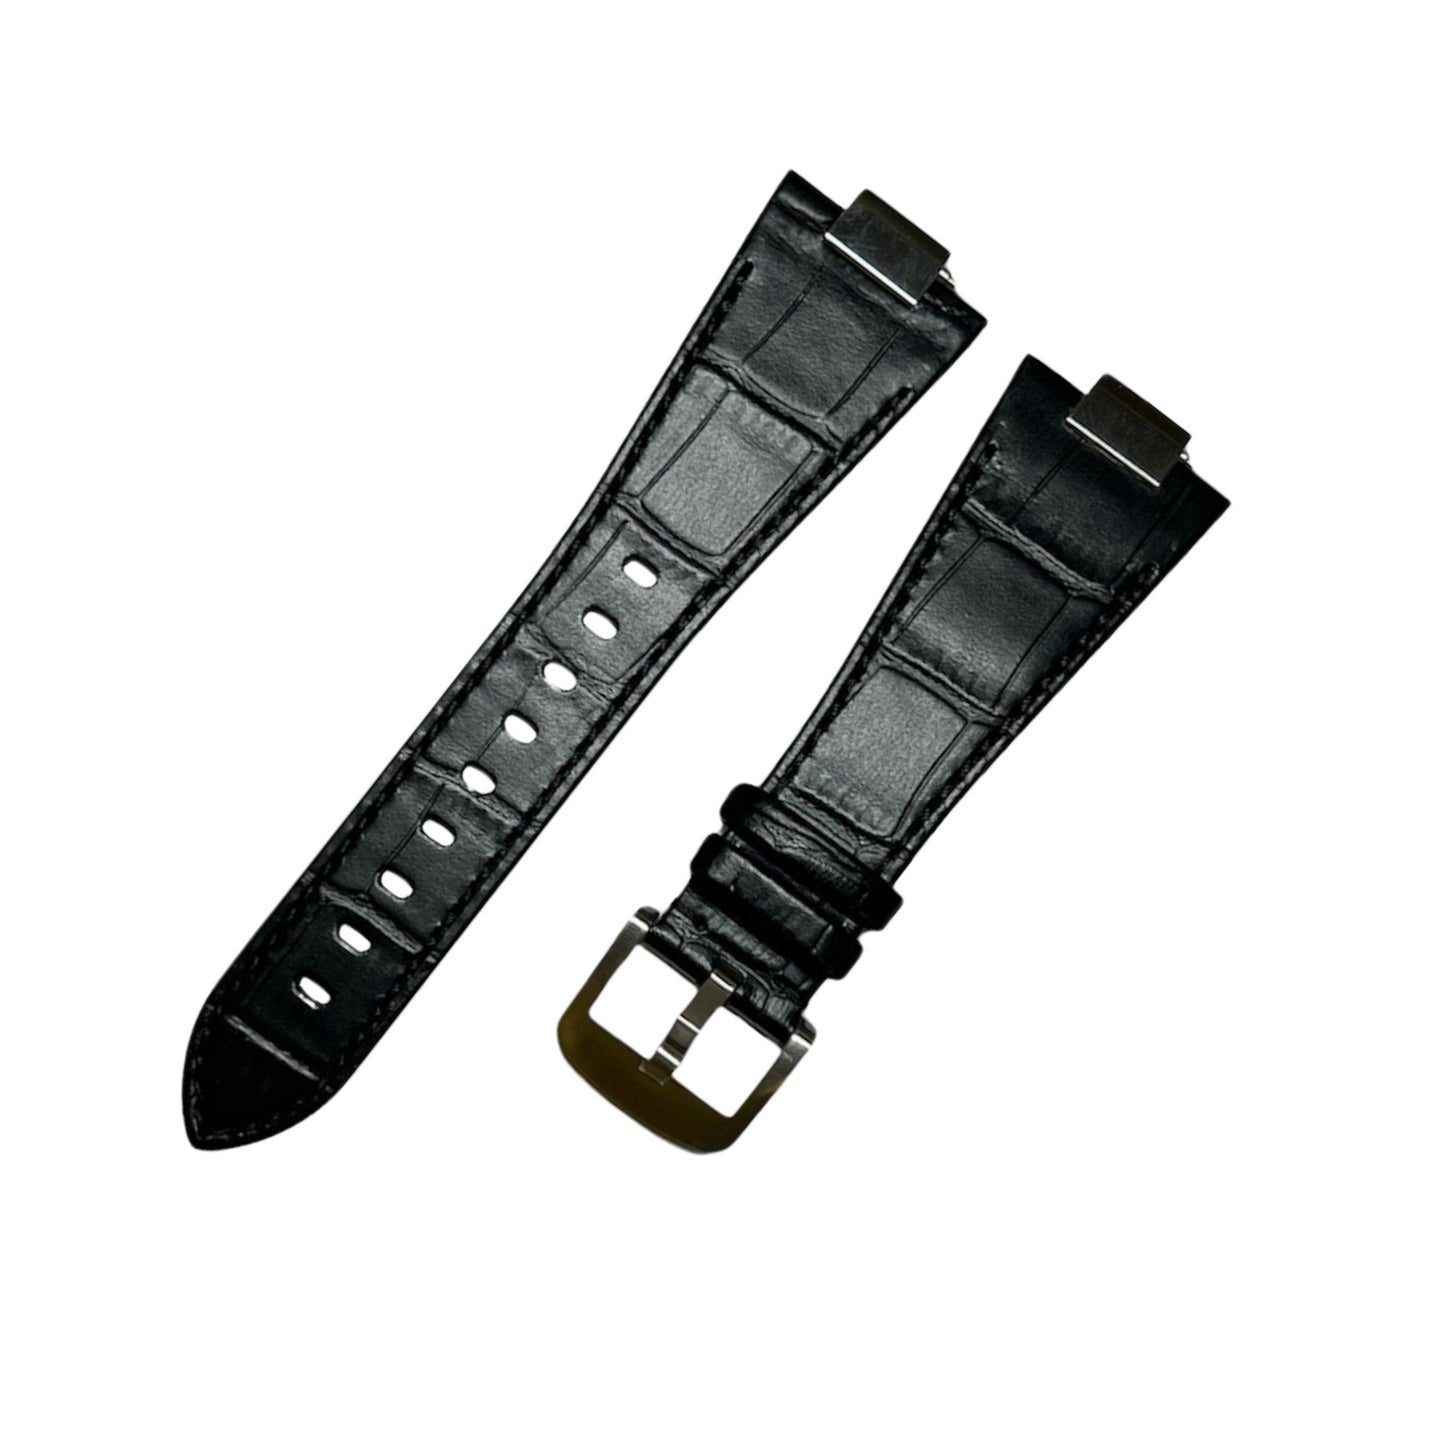 Bracelet de montre Tissot (PRX) - MONTRE A PAPY - Montre automatique seiko mod Noir croco